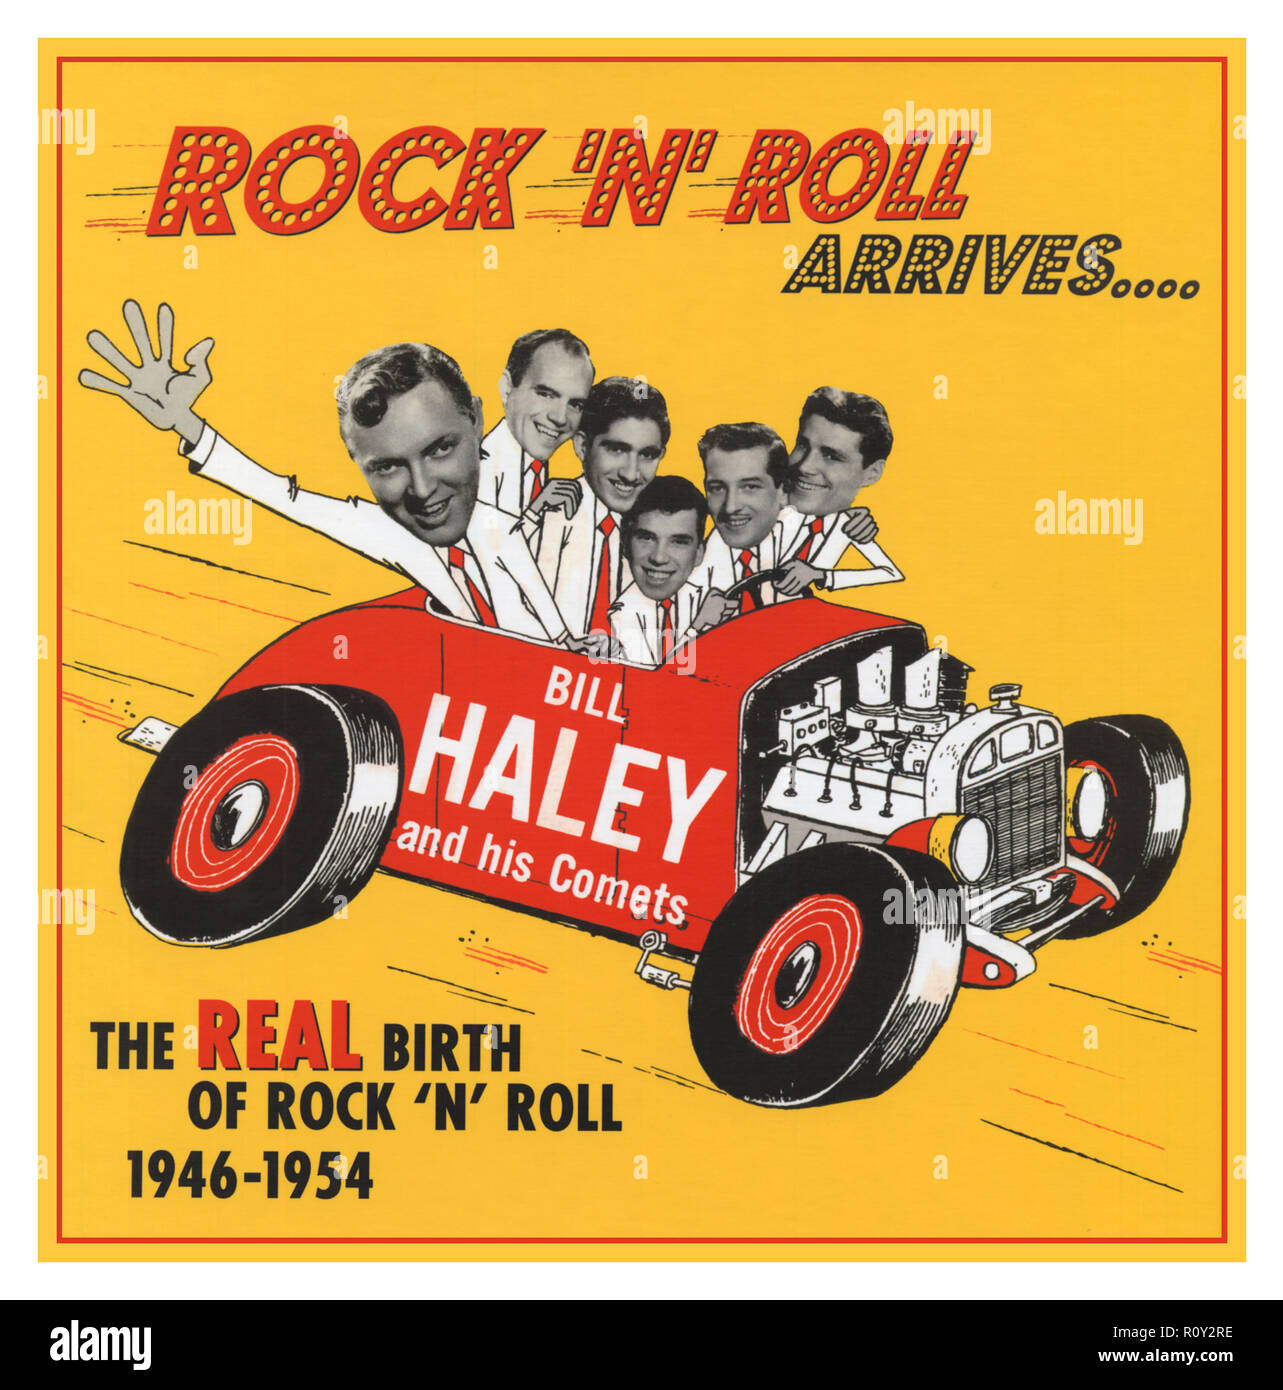 Bill Haley e le sue comete ‎- Rock 'n' Roll arriva.. Compilazione CD di Bill Haley e le sue comete Rock and Roll canzoni da 1946-1954 re-release 2006 queste registrazioni sono dove rock 'n' roll davvero iniziato. Essi sono antecedenti la roccia intorno all'orologio, e rivelare Bill e le comete al lavoro sulla propria miscela unica di Boogie Woogie, hillbilly, pop, blues e jazz, anni prima di chiunque altro. Si sente lui inventare Il come-ancora senza nome musica che è venuto a essere chiamato rock 'n' roll che alla fine ha cambiato il mondo. Foto Stock